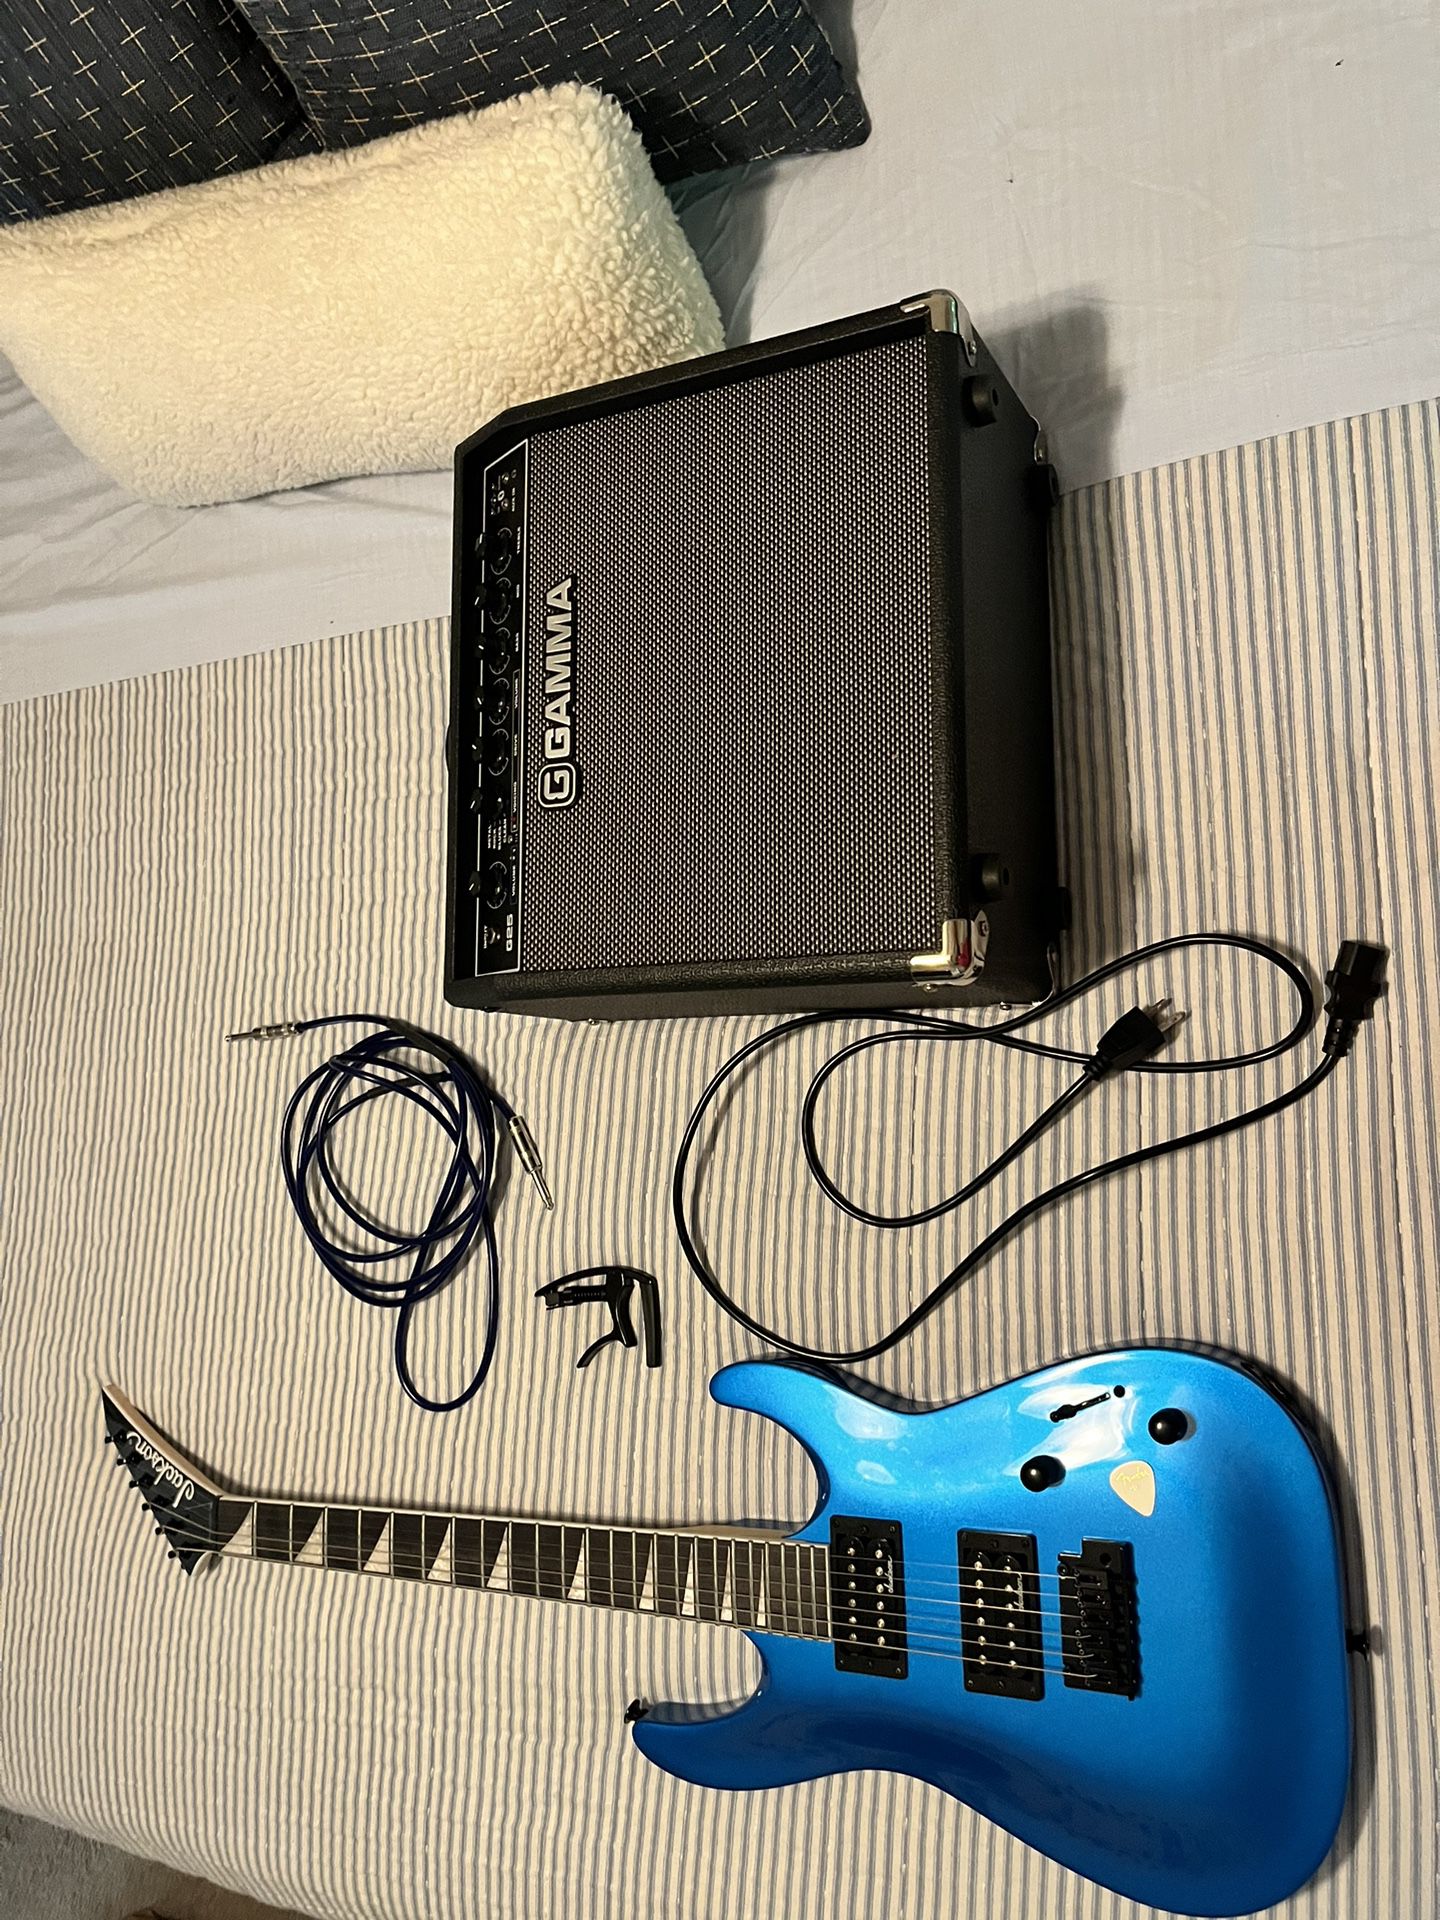 Guitar And Amp 